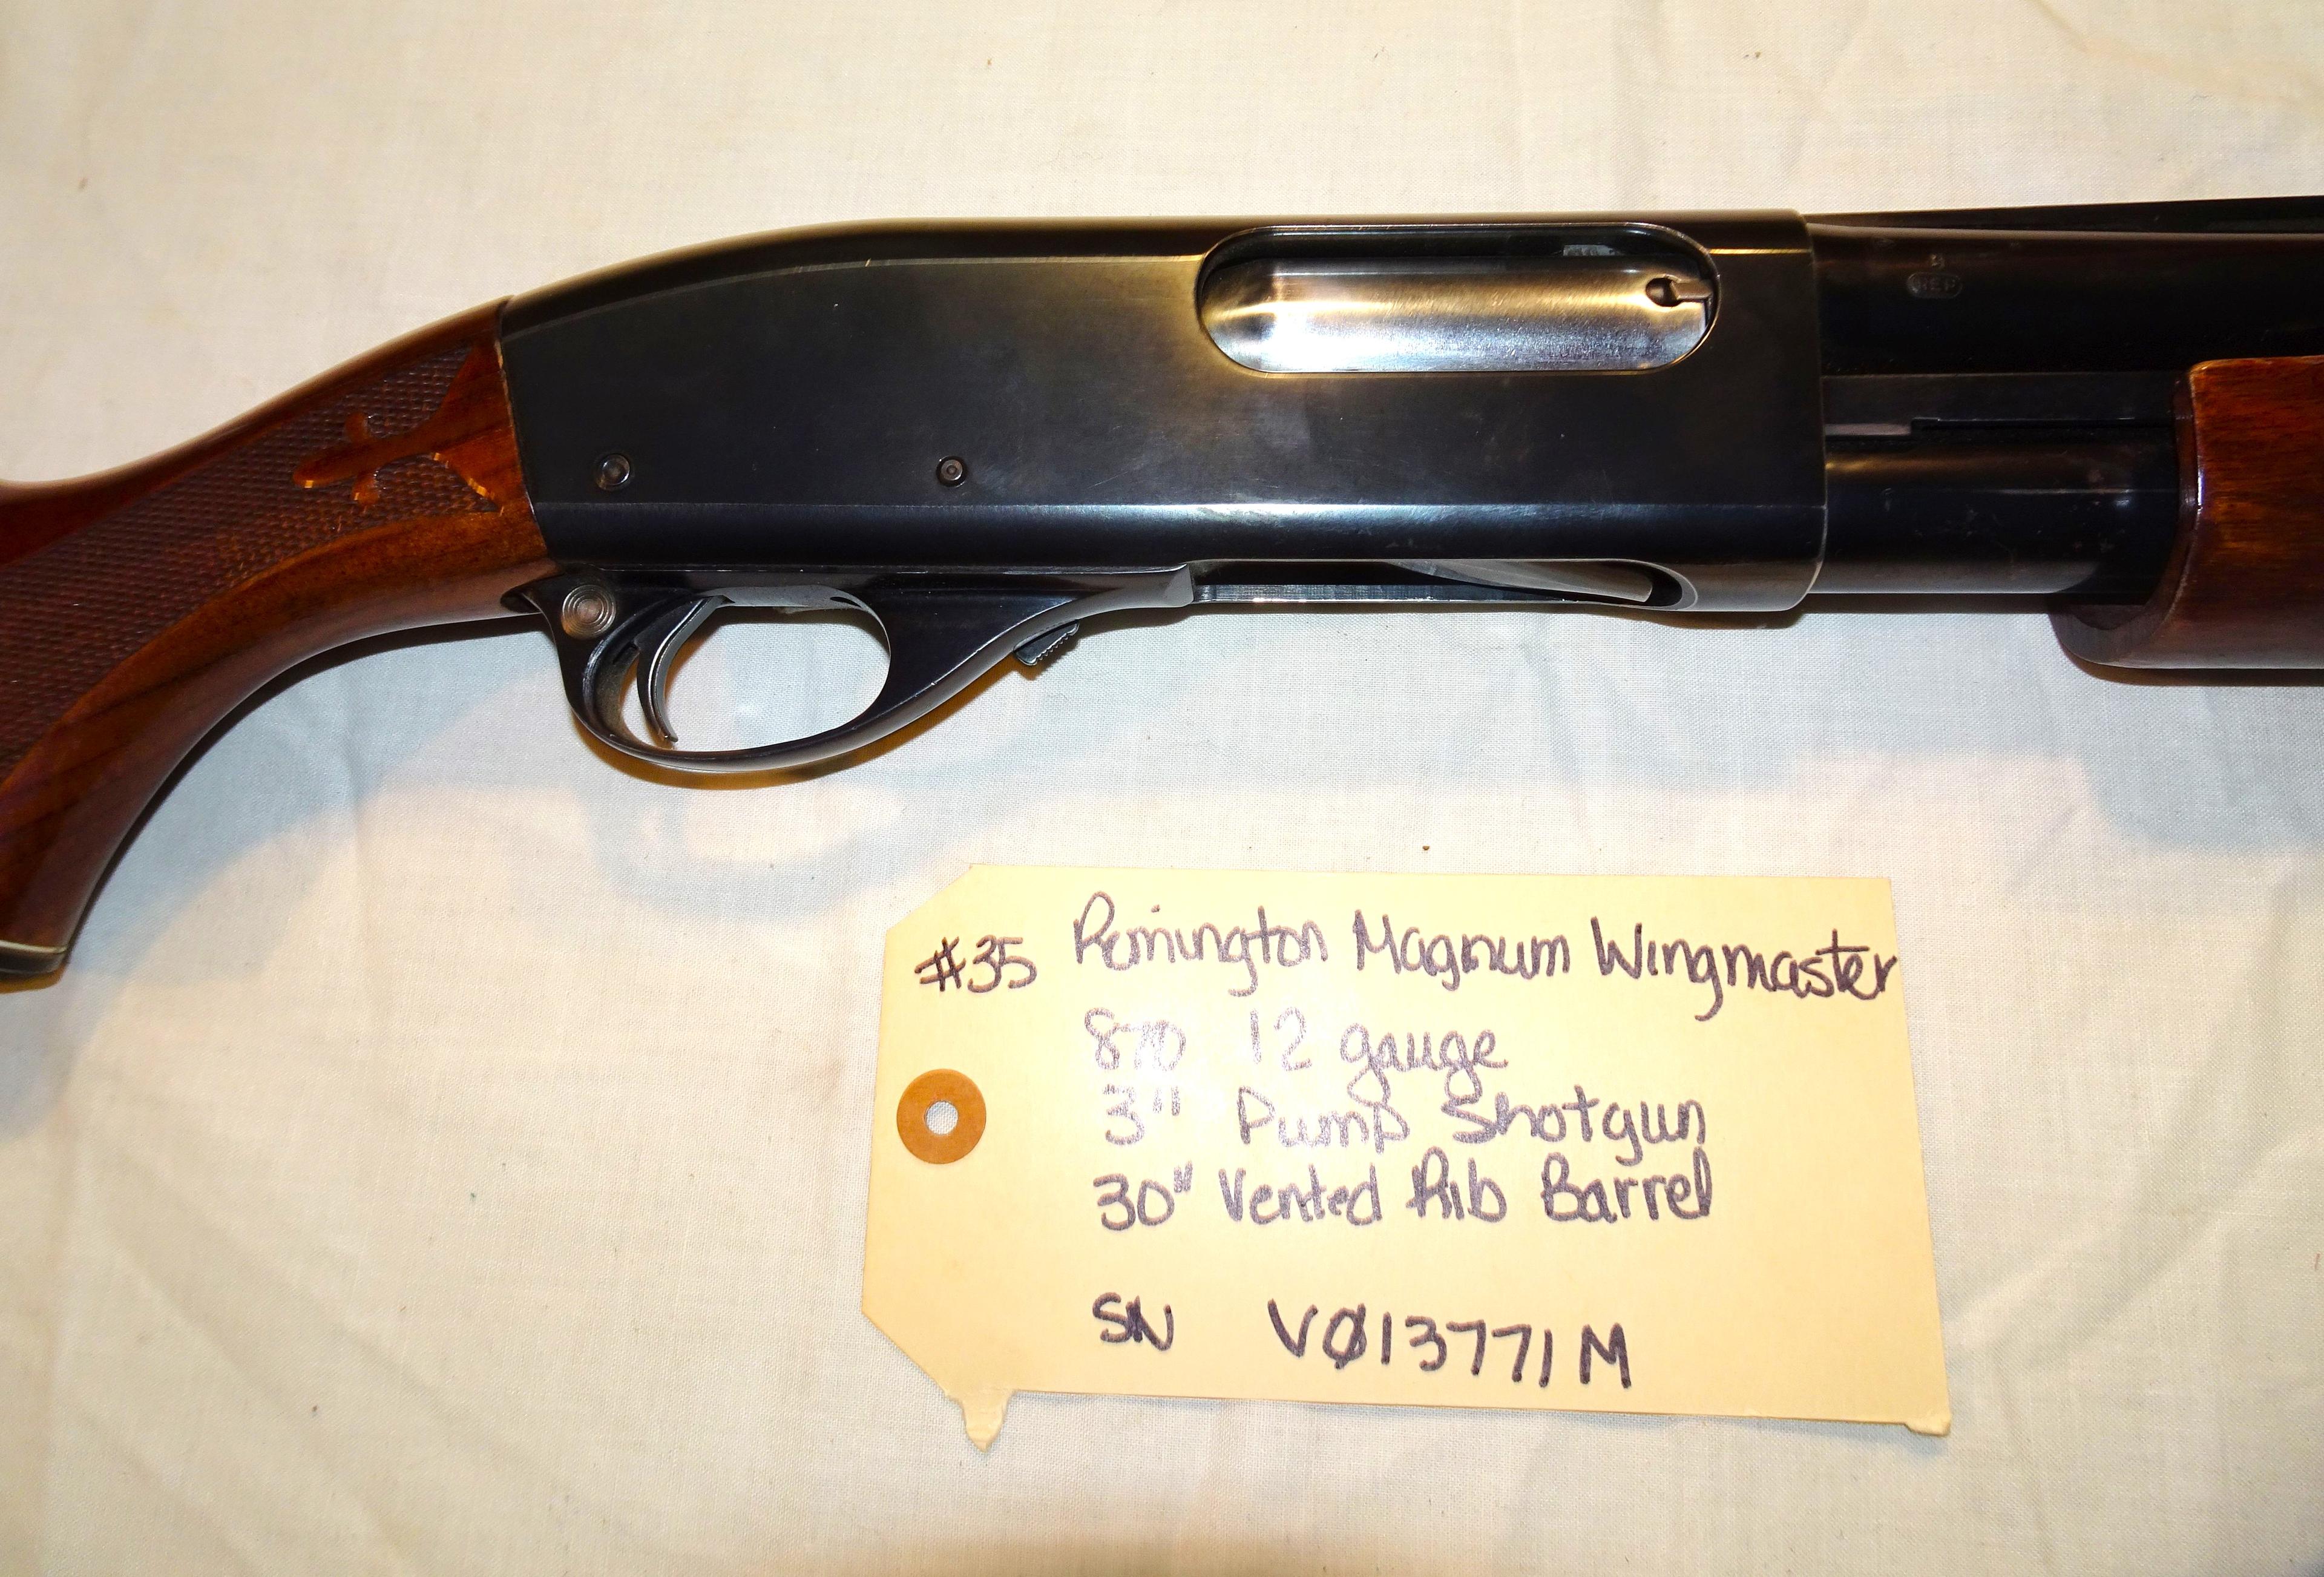 Remington Magnum Wingmaster 870 12 ga 3" Pump Shotgun 30" vented Rib Barrel